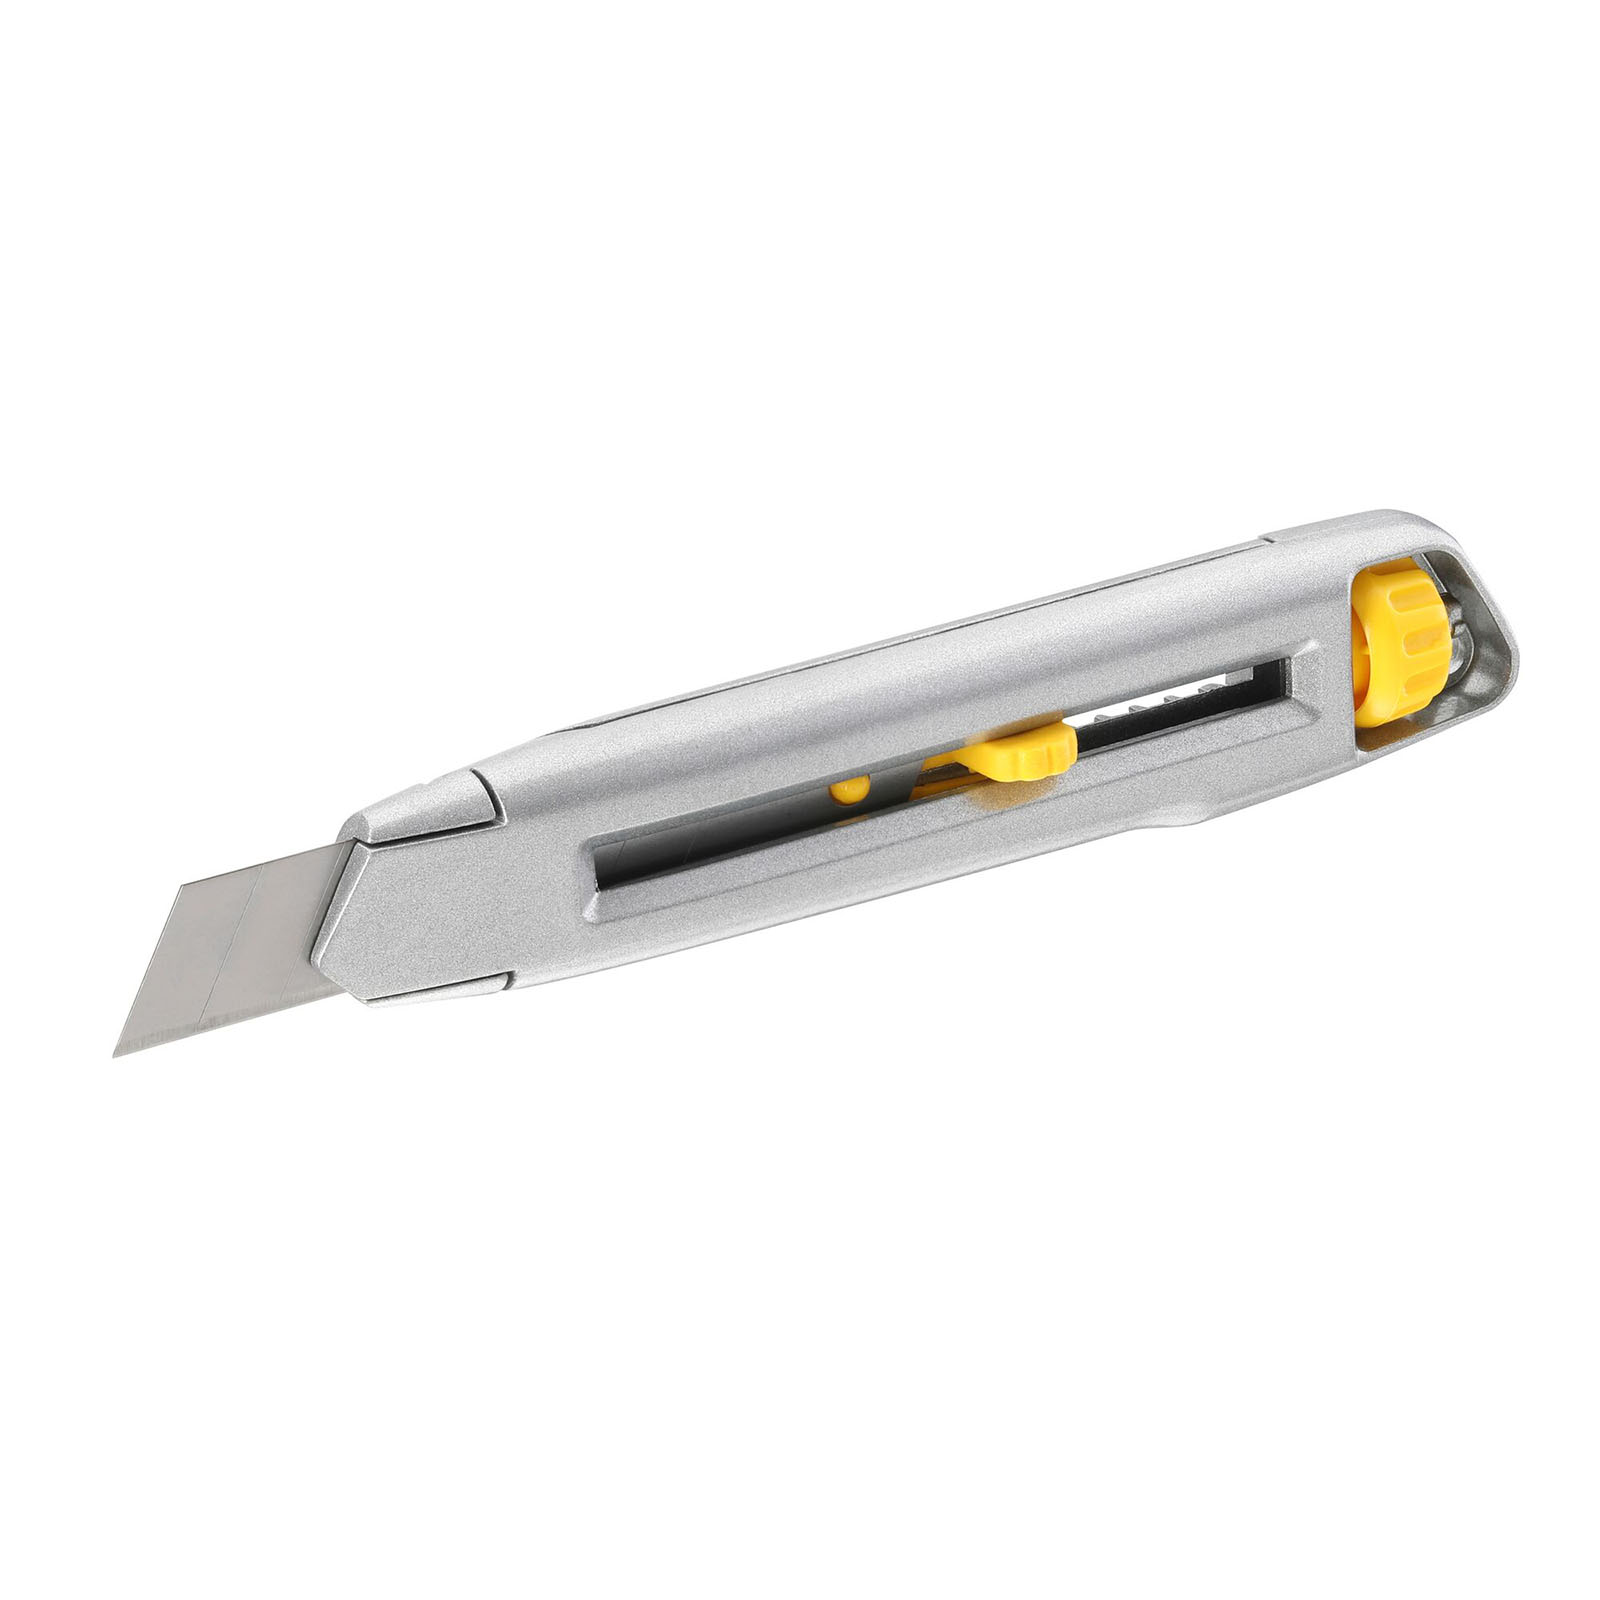 STANLEY Cutter Interlock 0-10-018 165 mm - Teppichmesser, Messer, Cuttermesser von STANLEY®